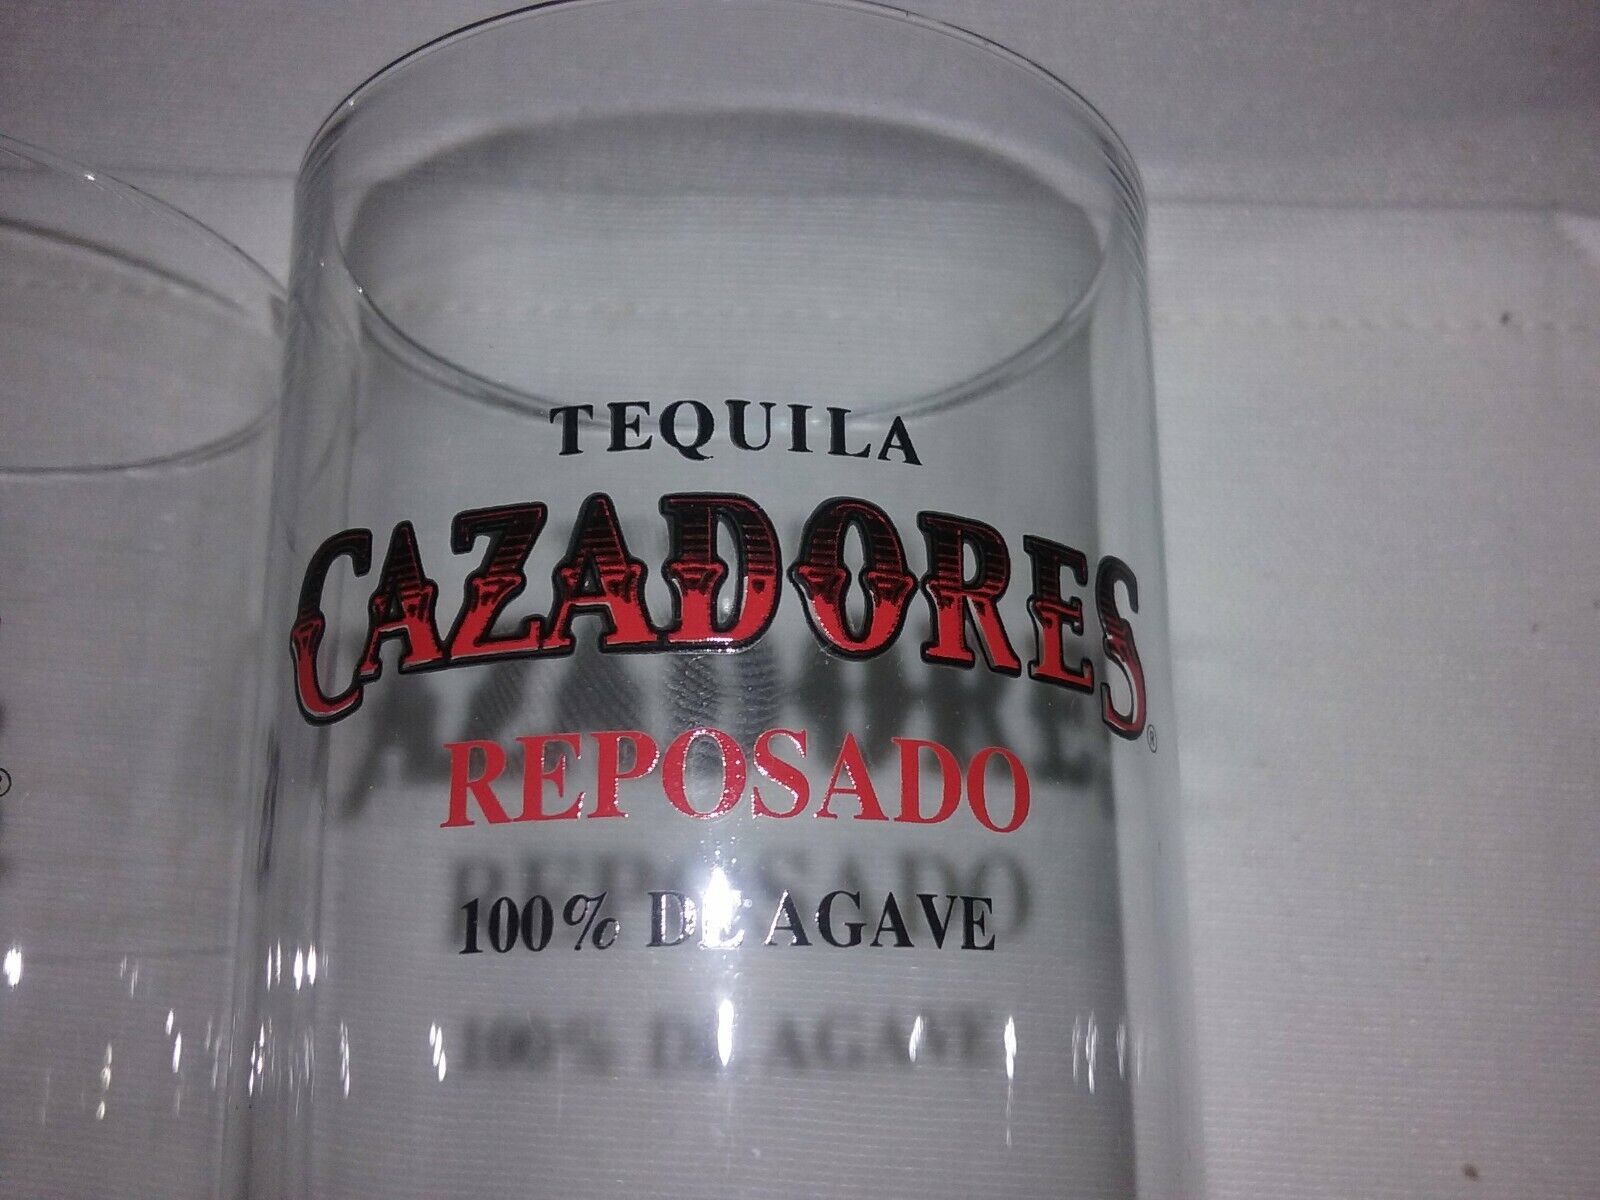 Set of 2  Liquor GLASSES CAZADORES Reposado 100% De Agave Mexico Tequila Est1870 Cazadores Reposado - фотография #4